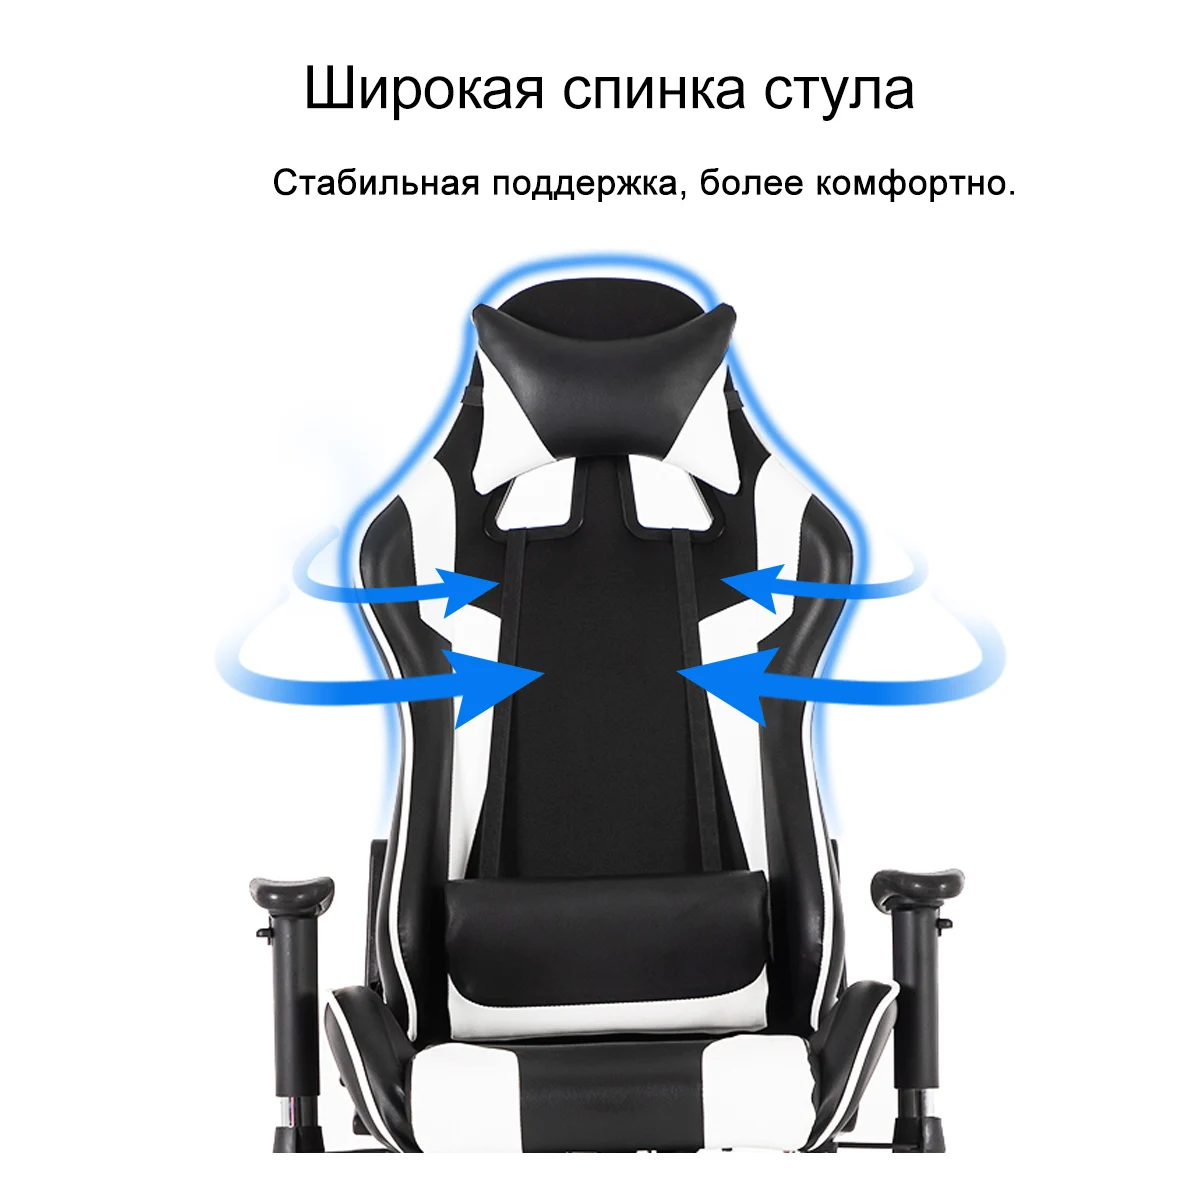 Офисное игровое кресло для гонок, кожаное эргономичное кресло с откидывающейся спинкой на 180 °, компьютерное кресло для Интернет-кафе, кресло для руководителя, регулируемое сиденье, подставка для ног